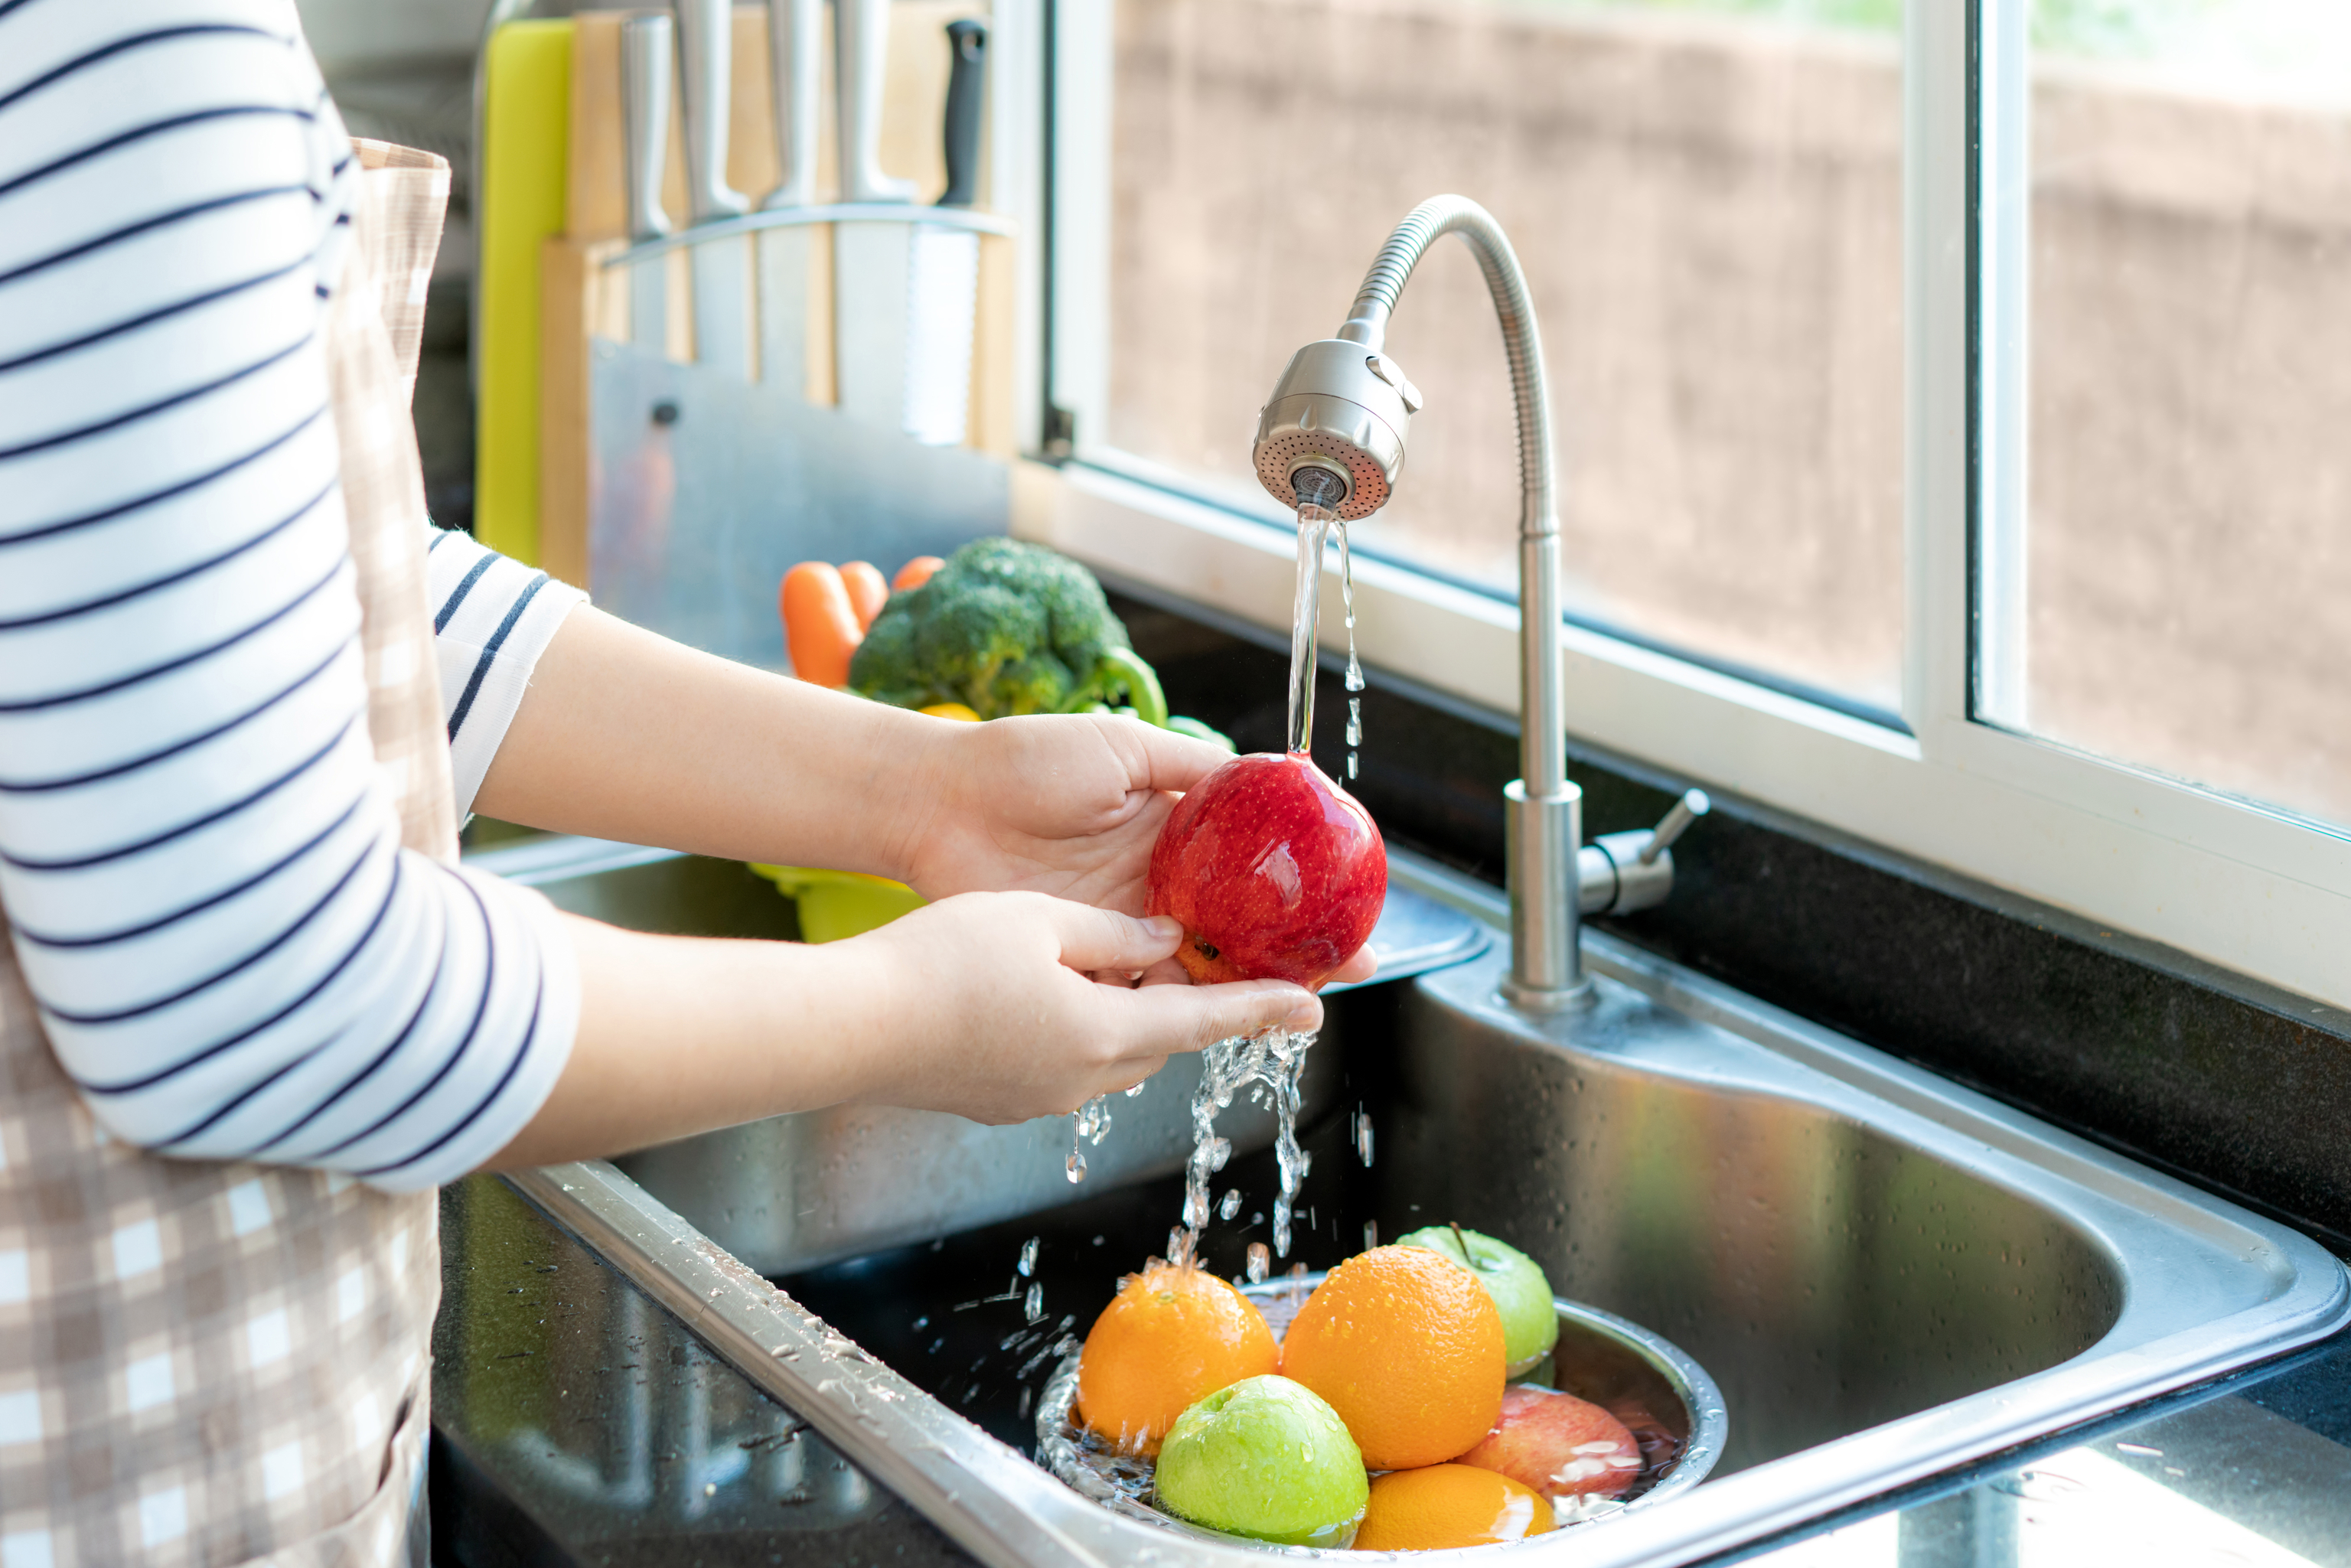 Cmo elegir, lavar y conservar las frutas y las verduras para evitar intoxicaciones por salmonella,e.coli o listeria